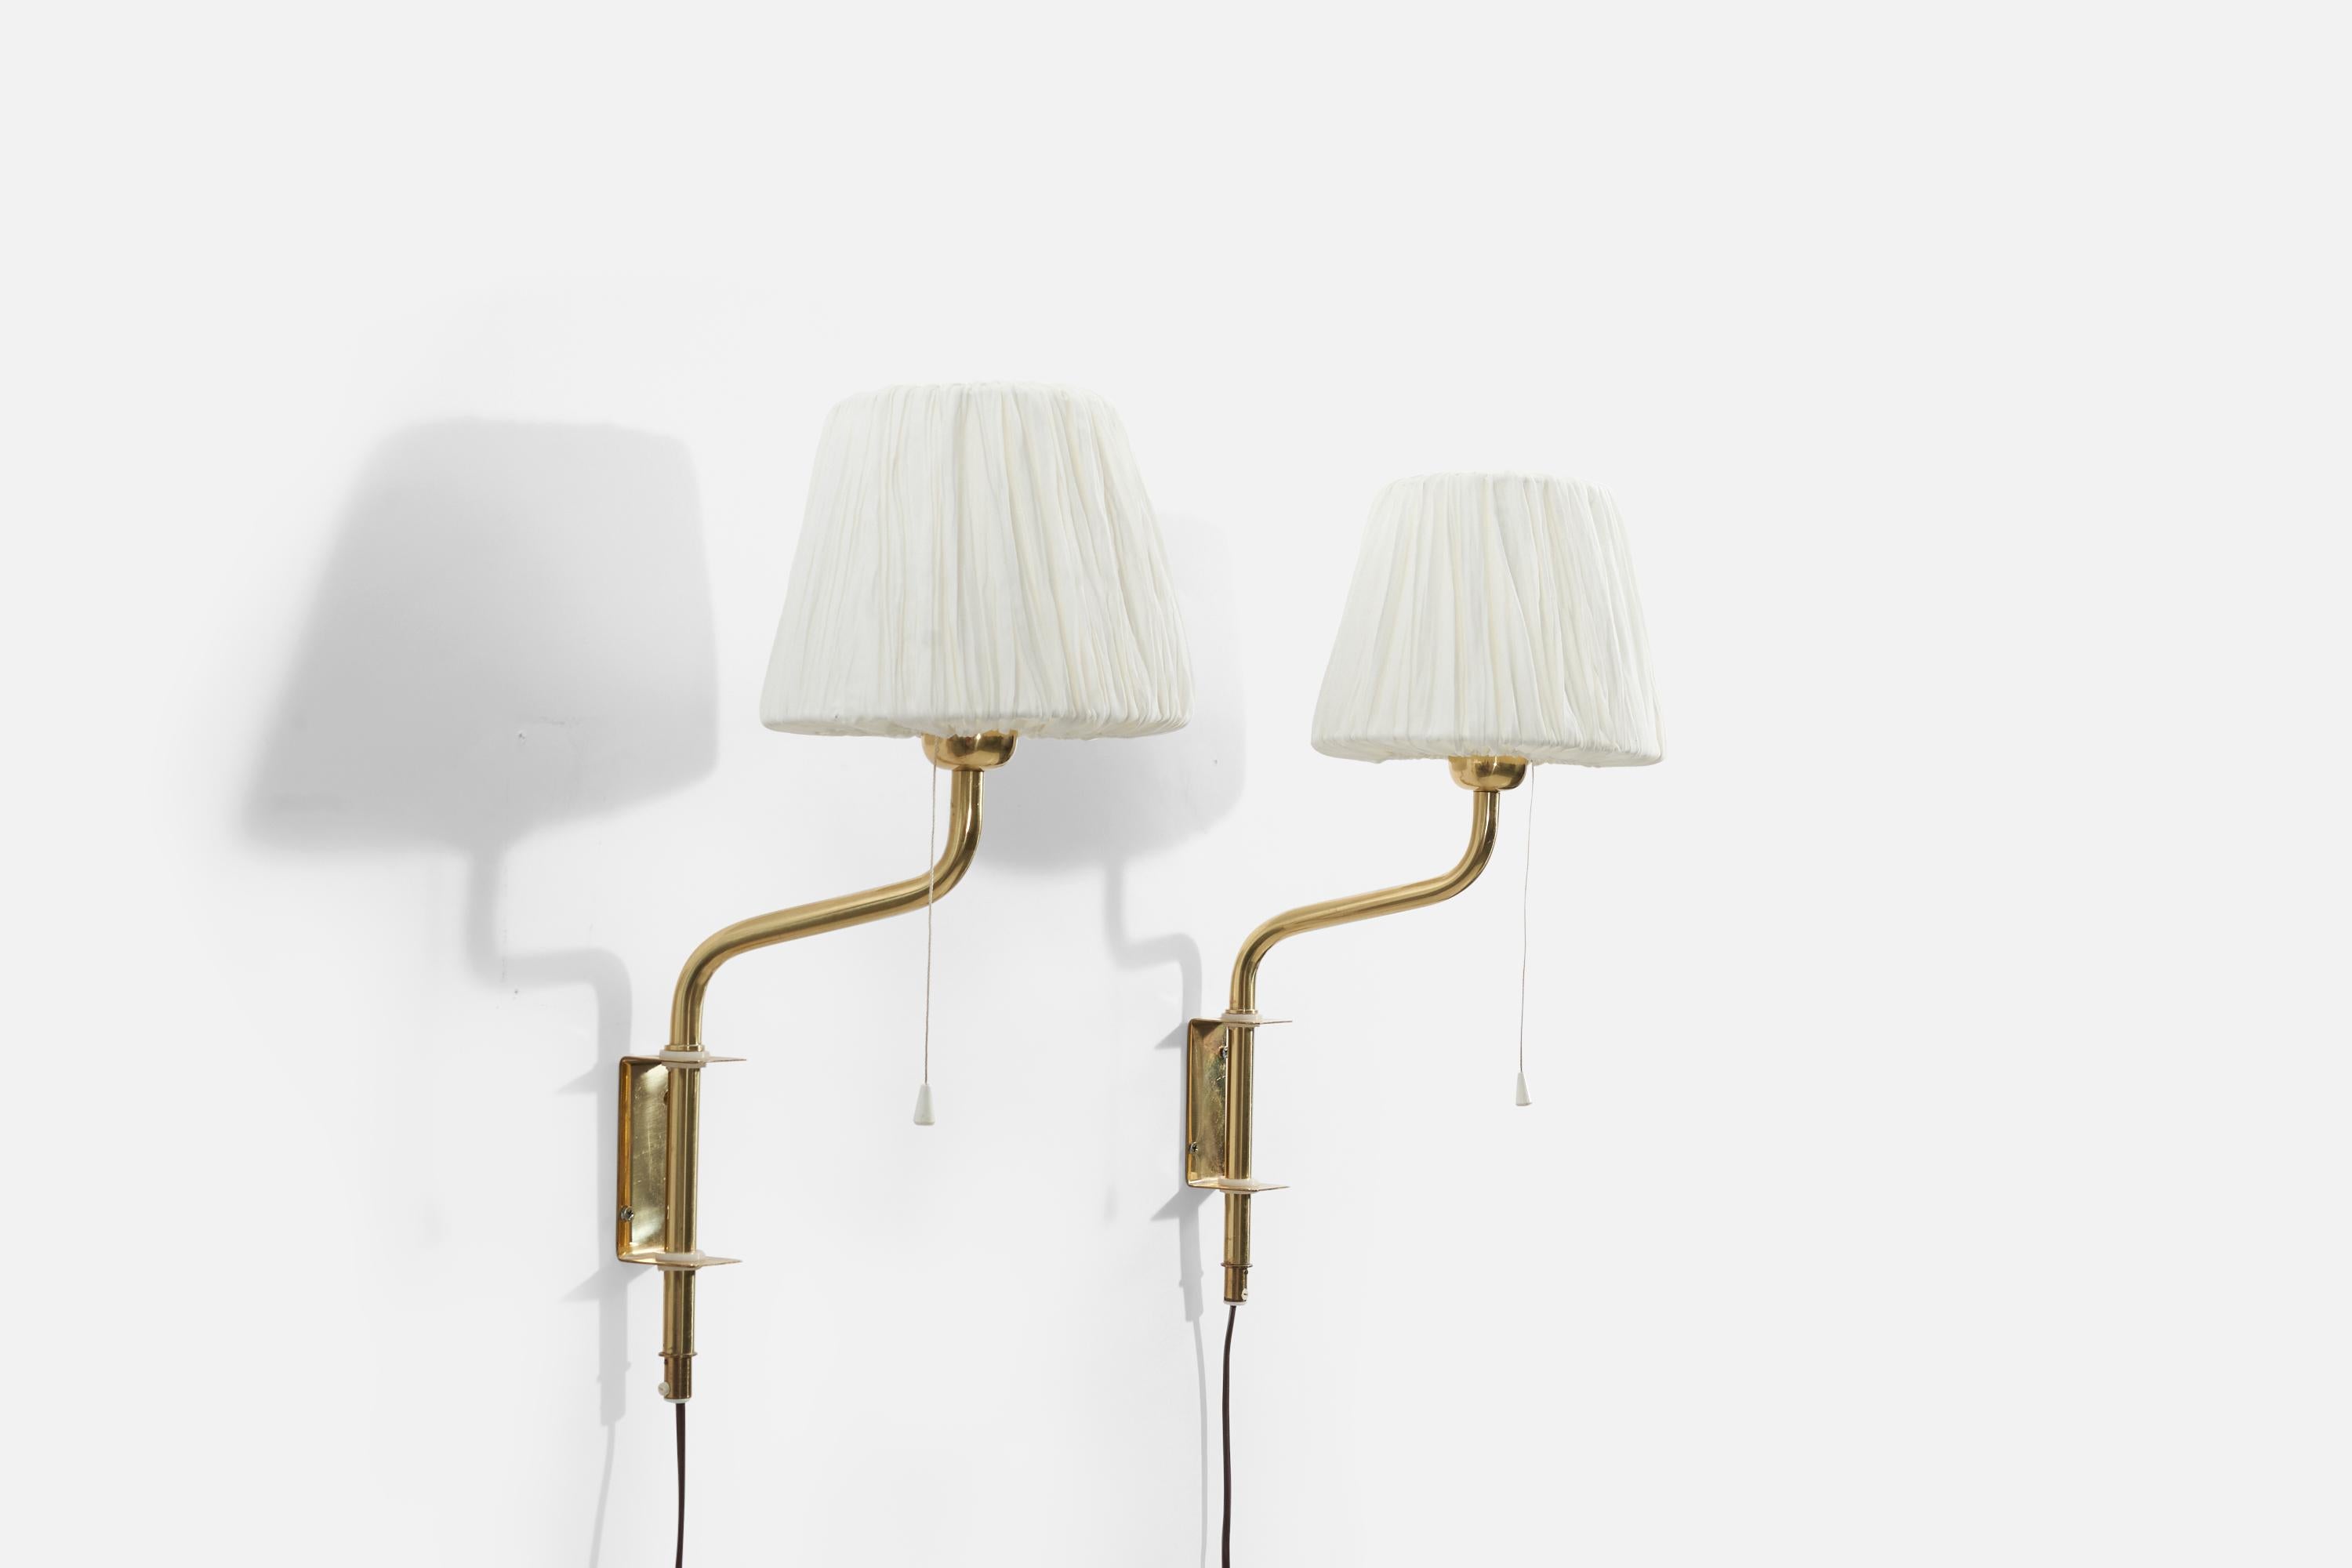 Ein Paar verstellbare Wandleuchten aus Messing mit Lampenschirmen aus Stoff, hergestellt in Schweden, 1960er Jahre.